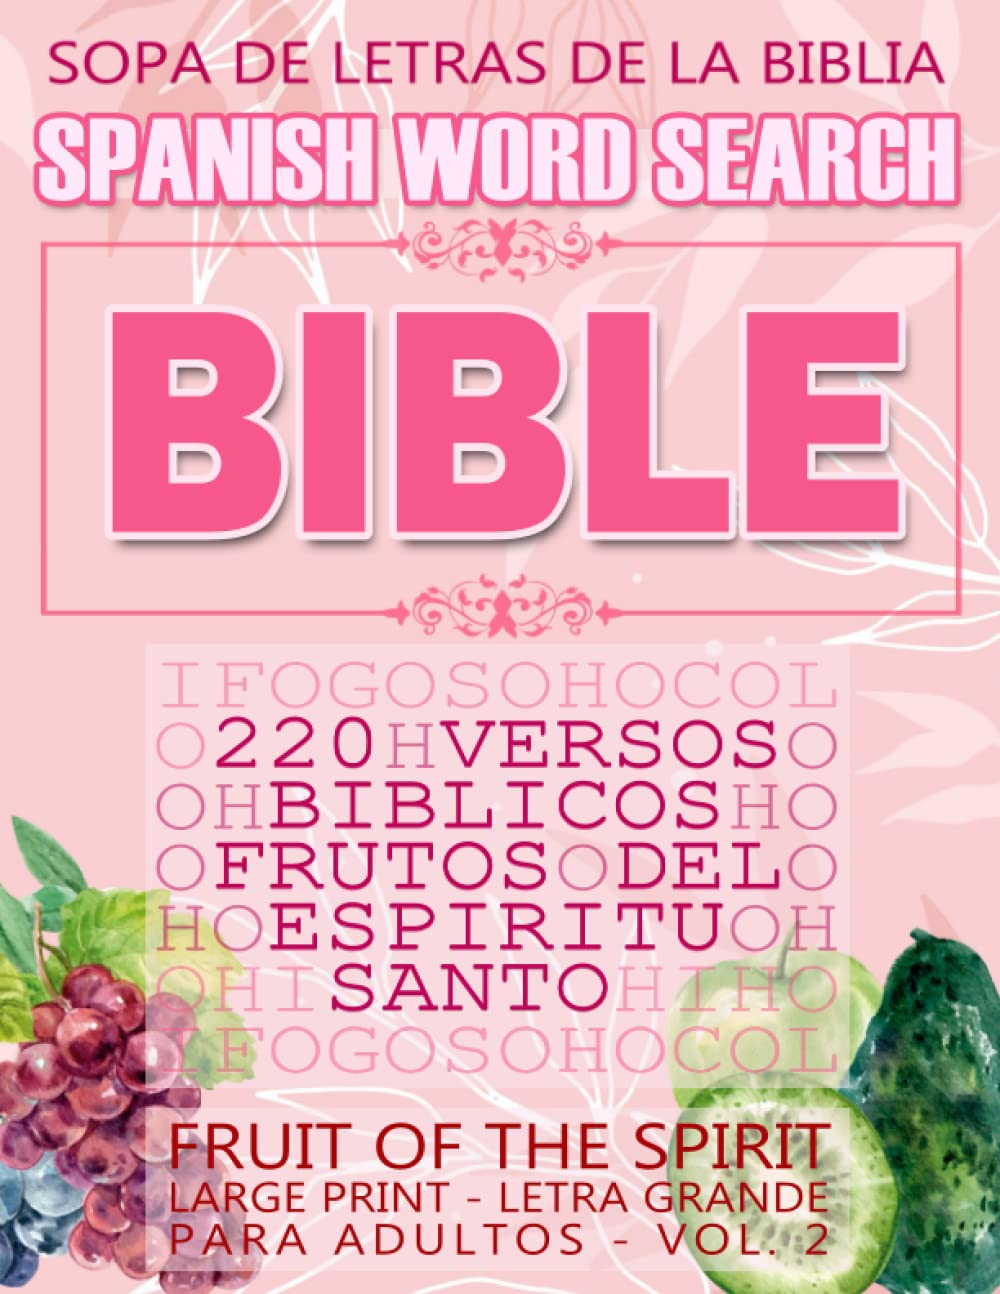 Spanish Bible Word Search (Sopa de letras de la Biblia) 220 Versos bíblicos, Frutos del Espíritu Santo (Fruit of the Spirit) Large Print - Letra ... (Spanish Bible Verses) (Spanish Edition)